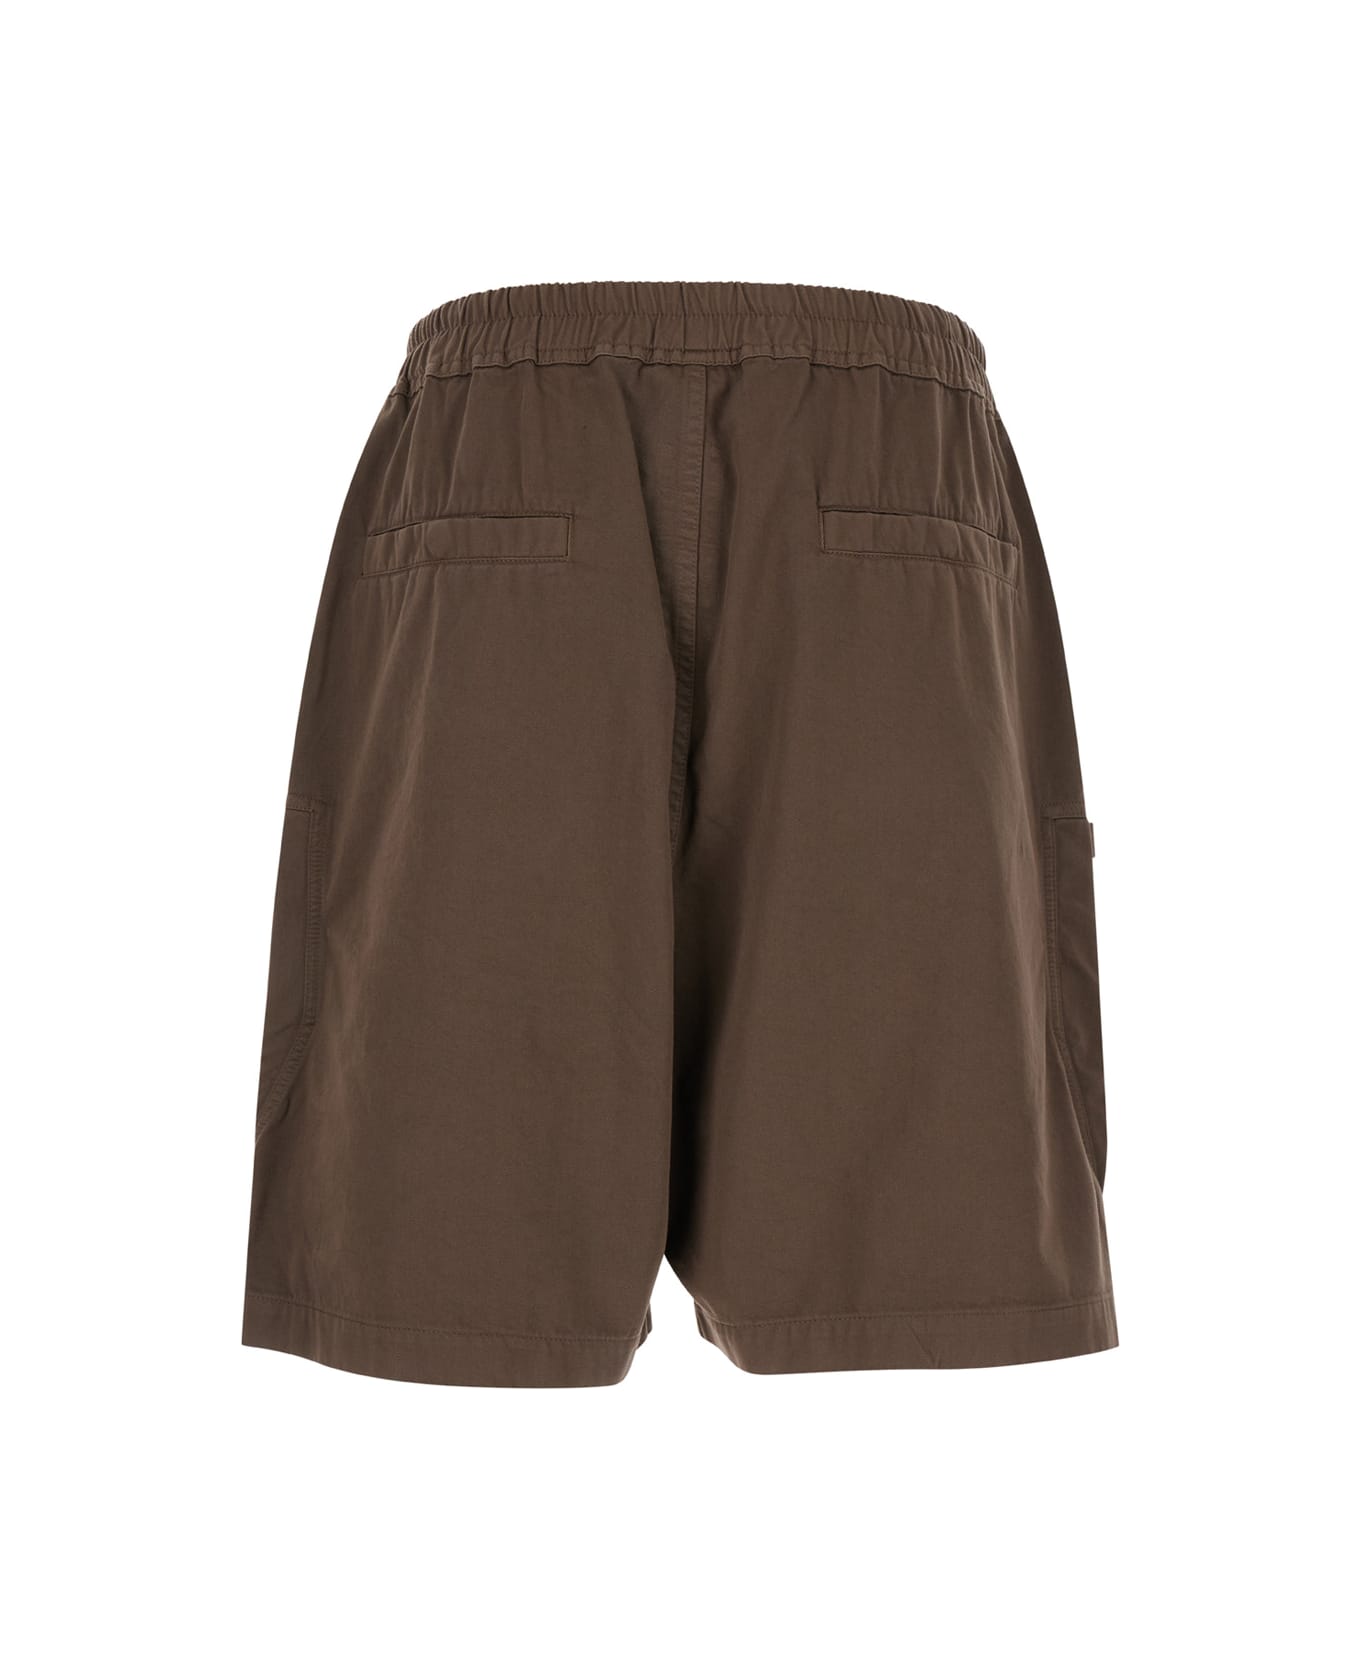 DRKSHDW 'bauhaus' Brown Bermuda Shorts With Zip Pockets In Cotton Man - Beige